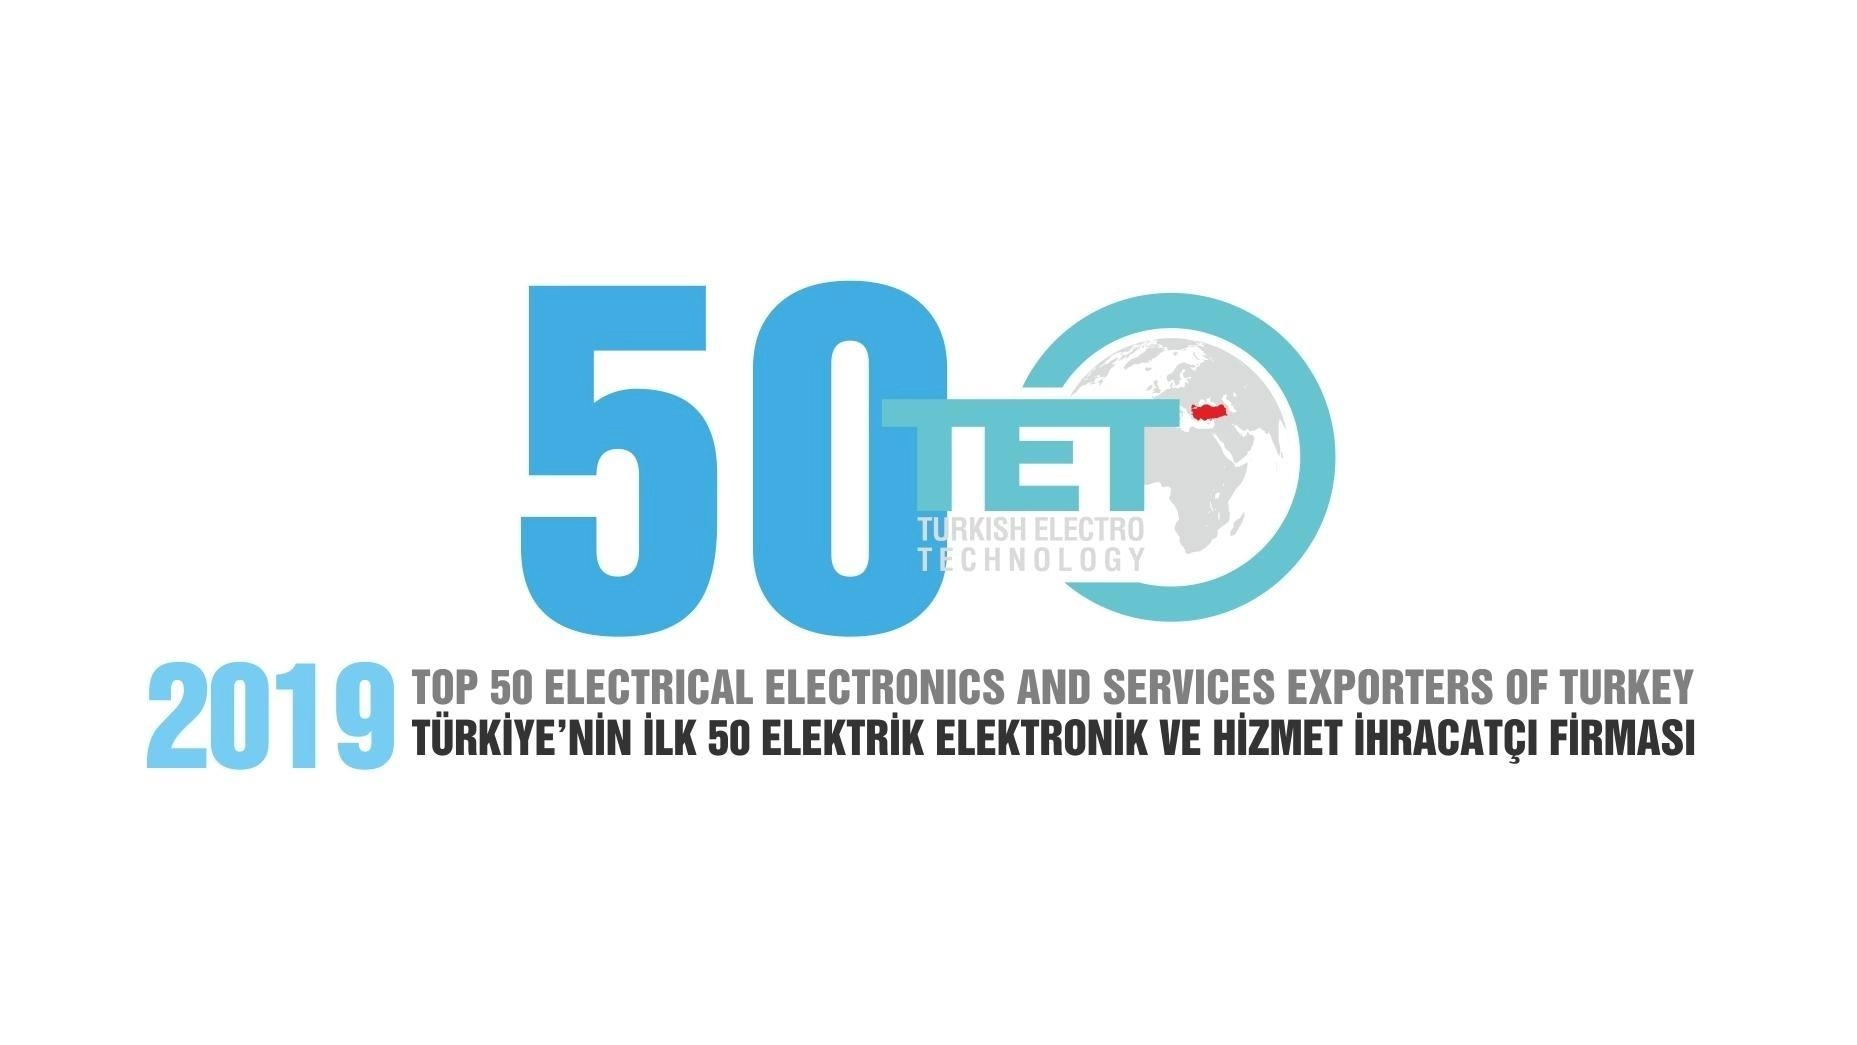 Nos complace informarles que EMSA fue galardonada como uno de los 50 MEJORES EXPORTADORES DE ELECTRICIDAD, ELECTRÓNICOS Y SERVICIOS DE TURQUÍA para el año 2019.